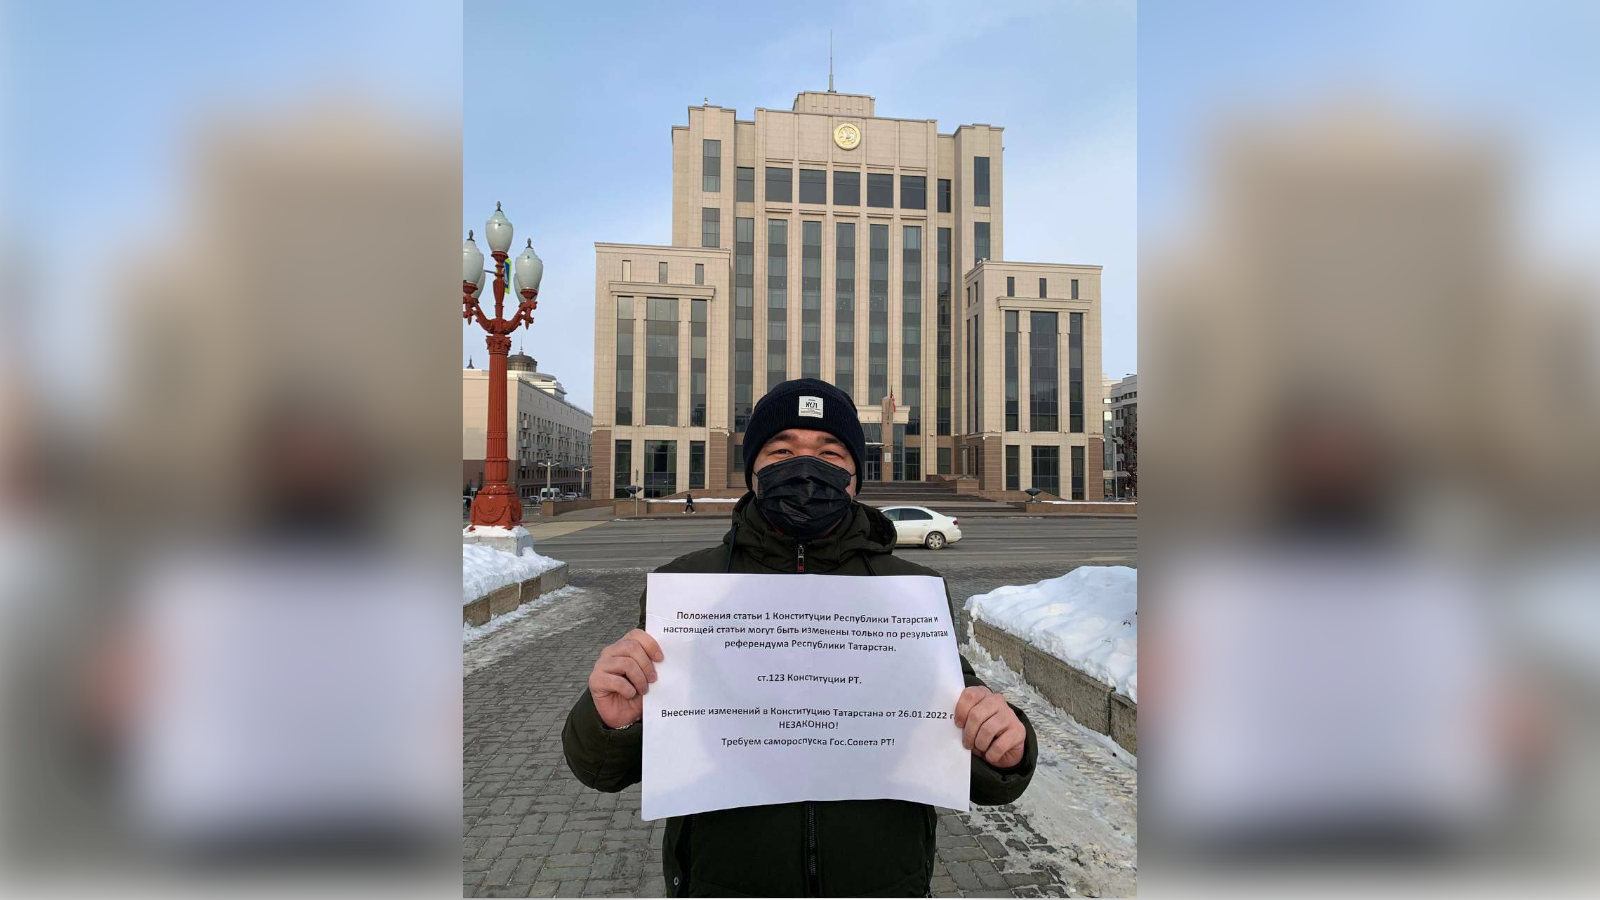 Сьогодні пройшов пікет проти зміни Конституції Татарстану